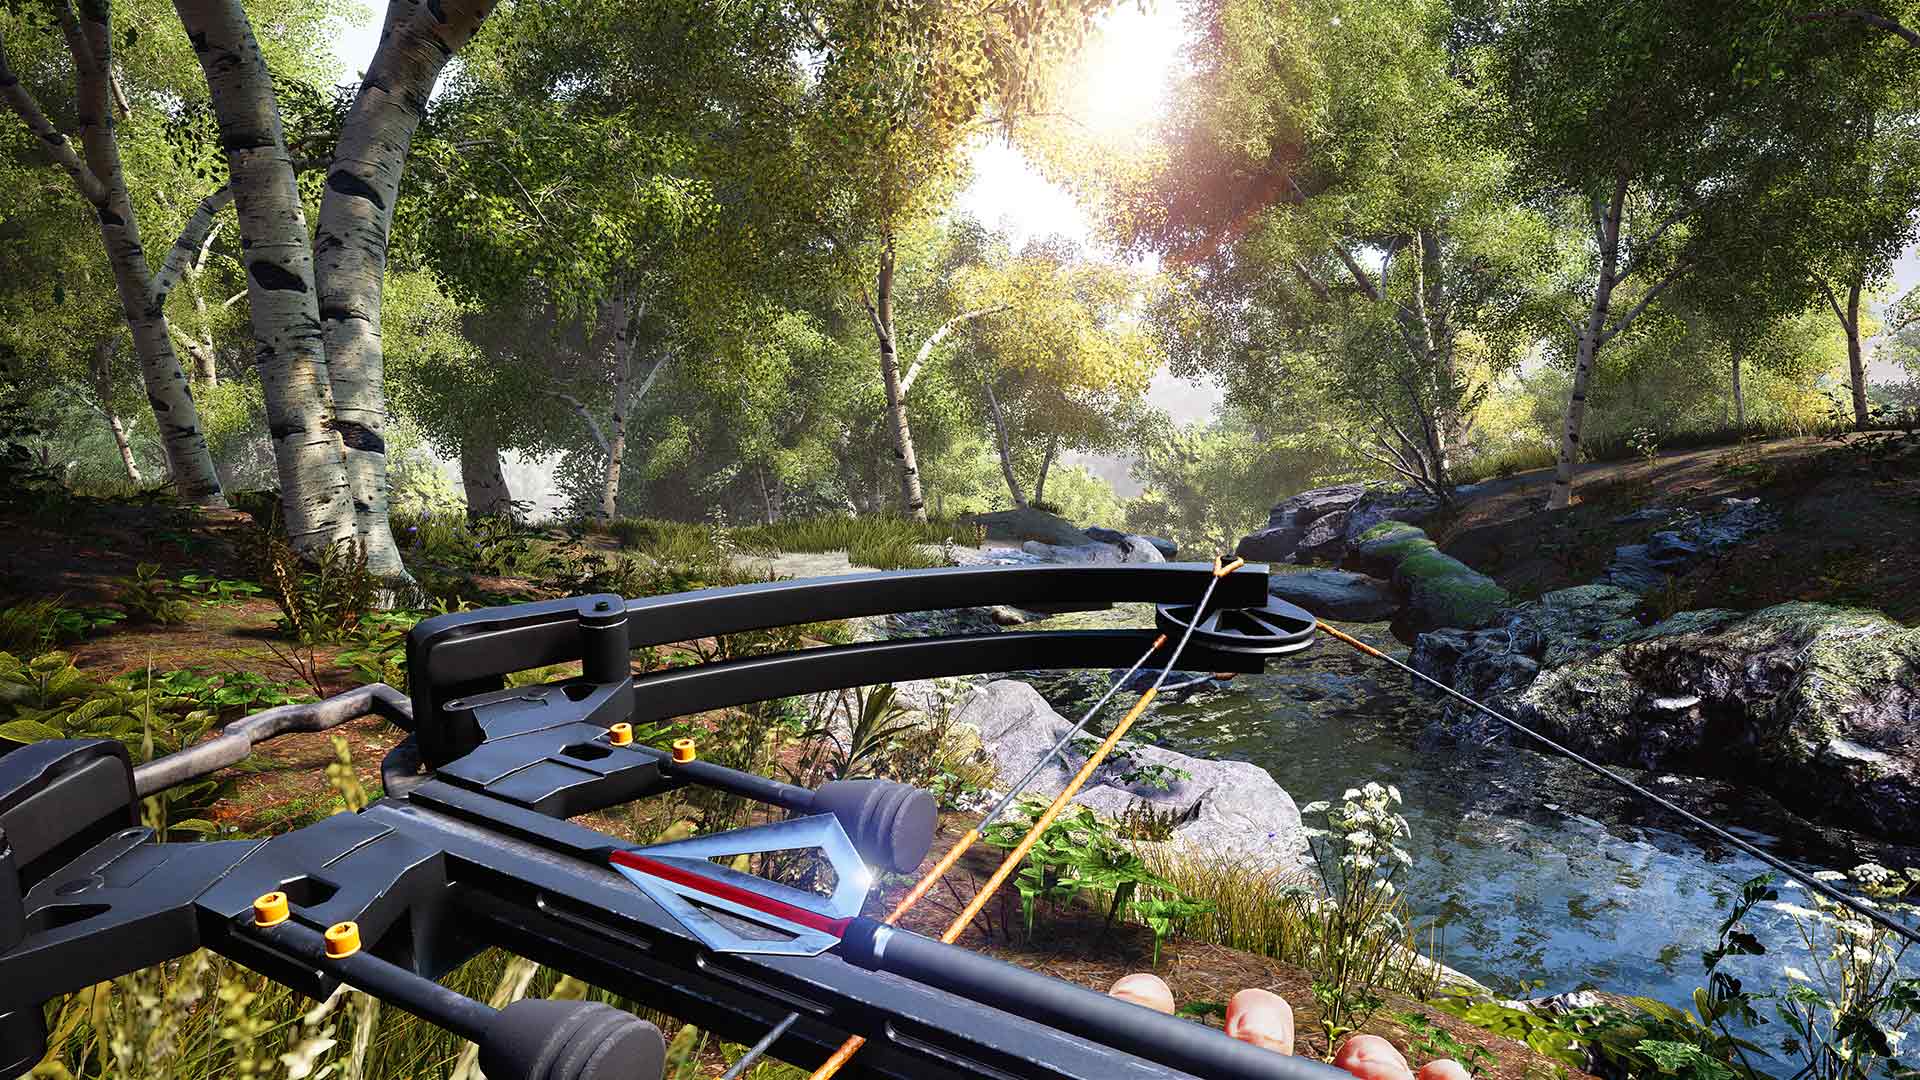 A Unreal Engine 4 ajudou a ampliar muito a qualidade dos aspectos gráficos do jogo, apesar de apresentar ainda problemas de animação.